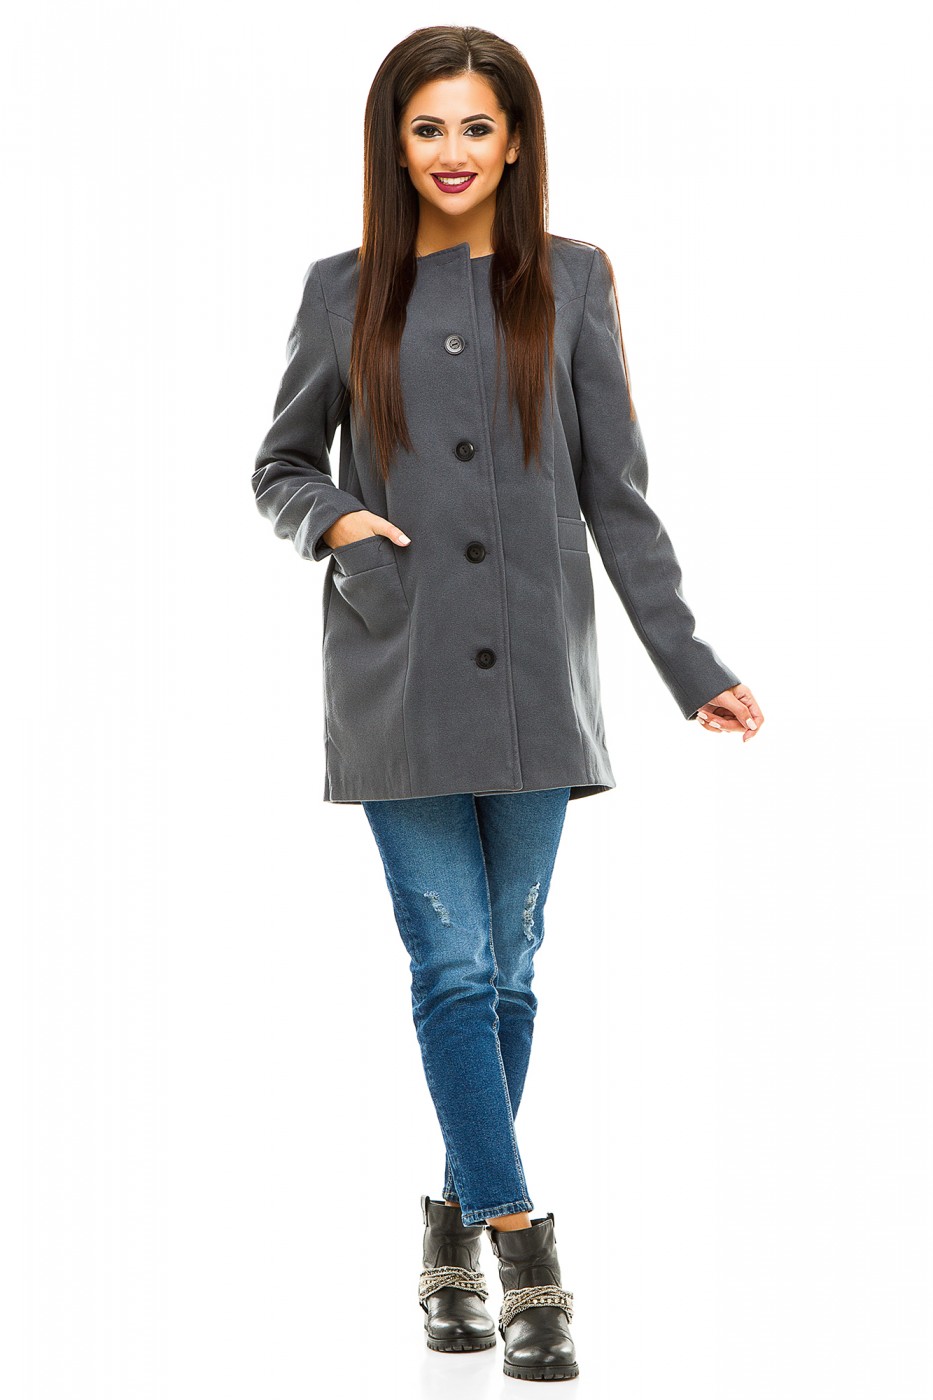 Серое пальто молодежное: с чем носить женское пальто, шарф и аксессуары к нему, пальто 2021, длинное, до колена, твидовое, шерстяное